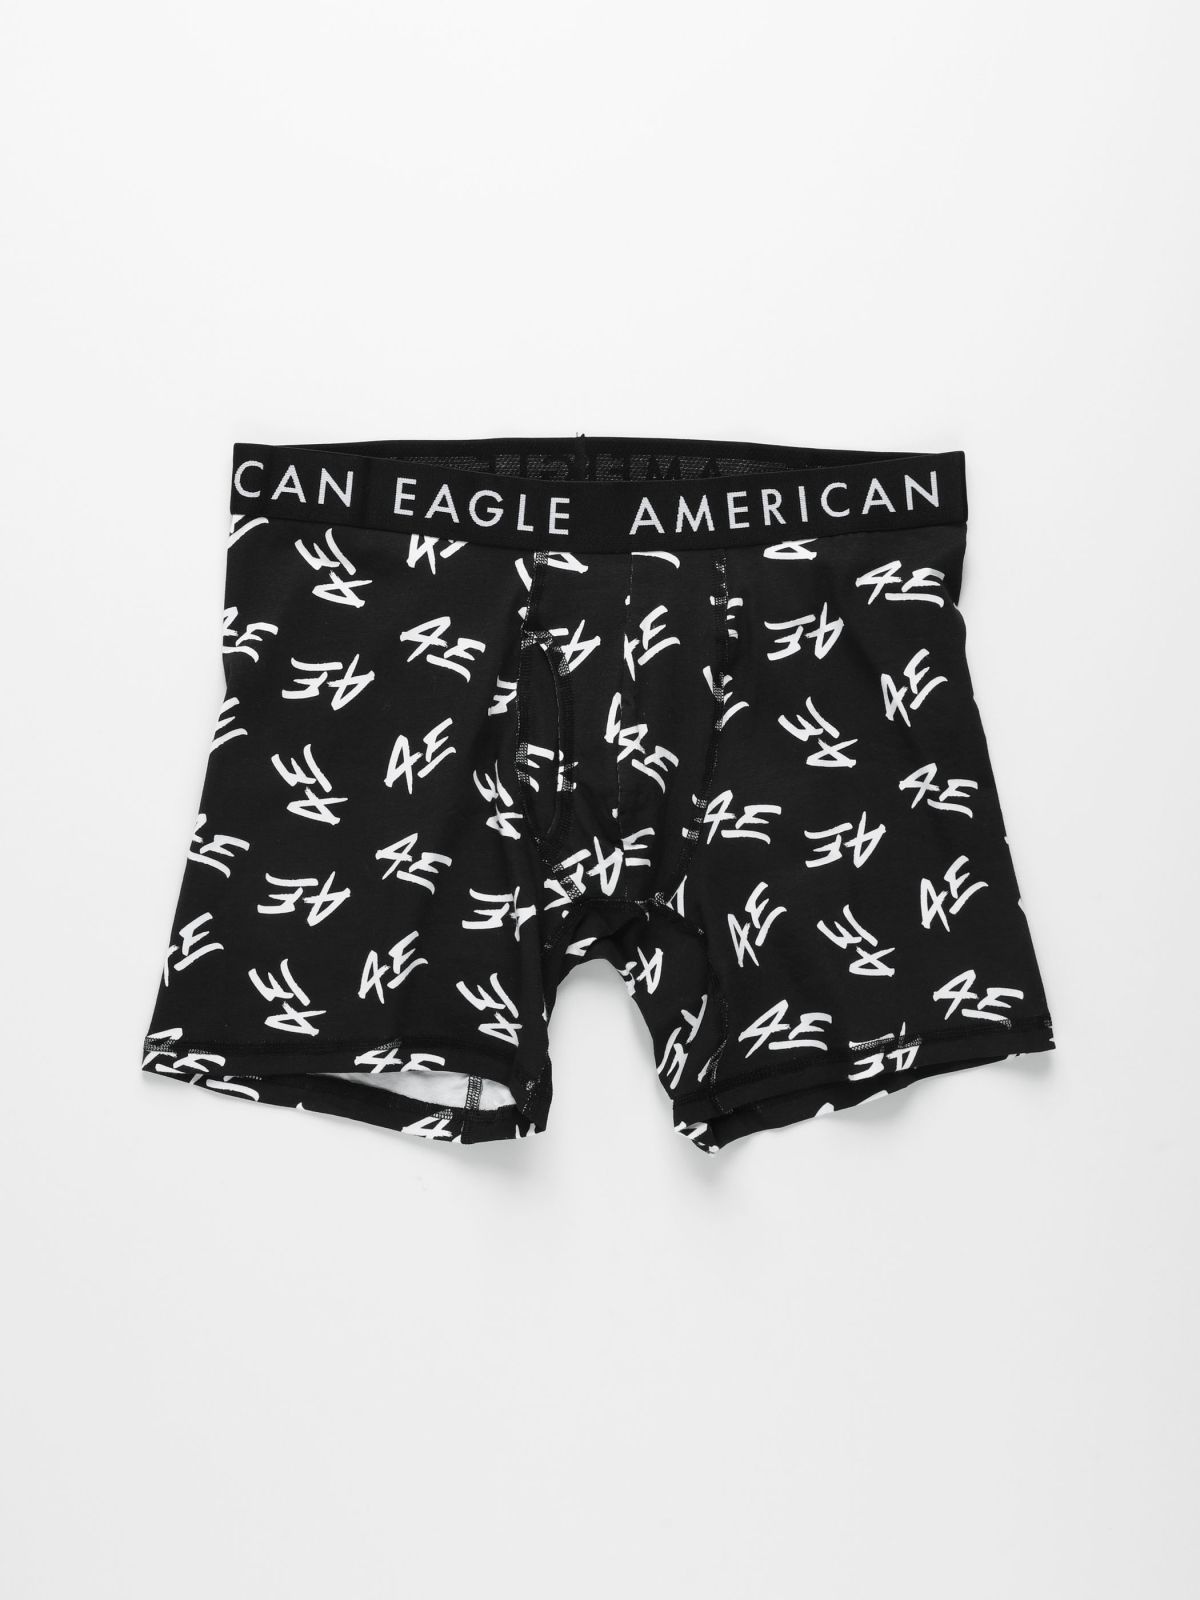  תחתוני בוקסר בהדפס לוגו / גברים של AMERICAN EAGLE